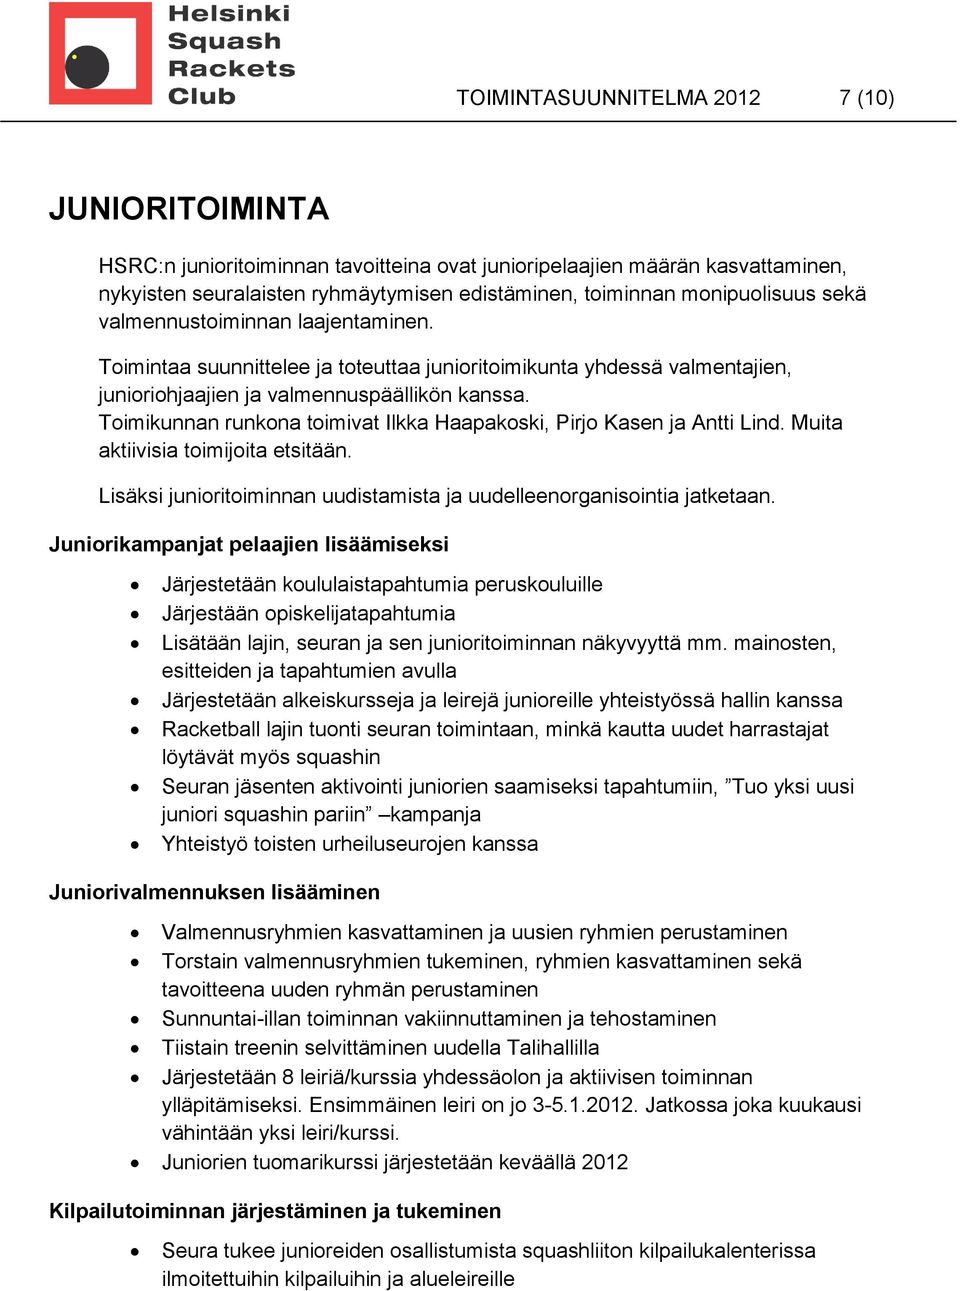 Toimikunnan runkona toimivat Ilkka Haapakoski, Pirjo Kasen ja Antti Lind. Muita aktiivisia toimijoita etsitään. Lisäksi junioritoiminnan uudistamista ja uudelleenorganisointia jatketaan.